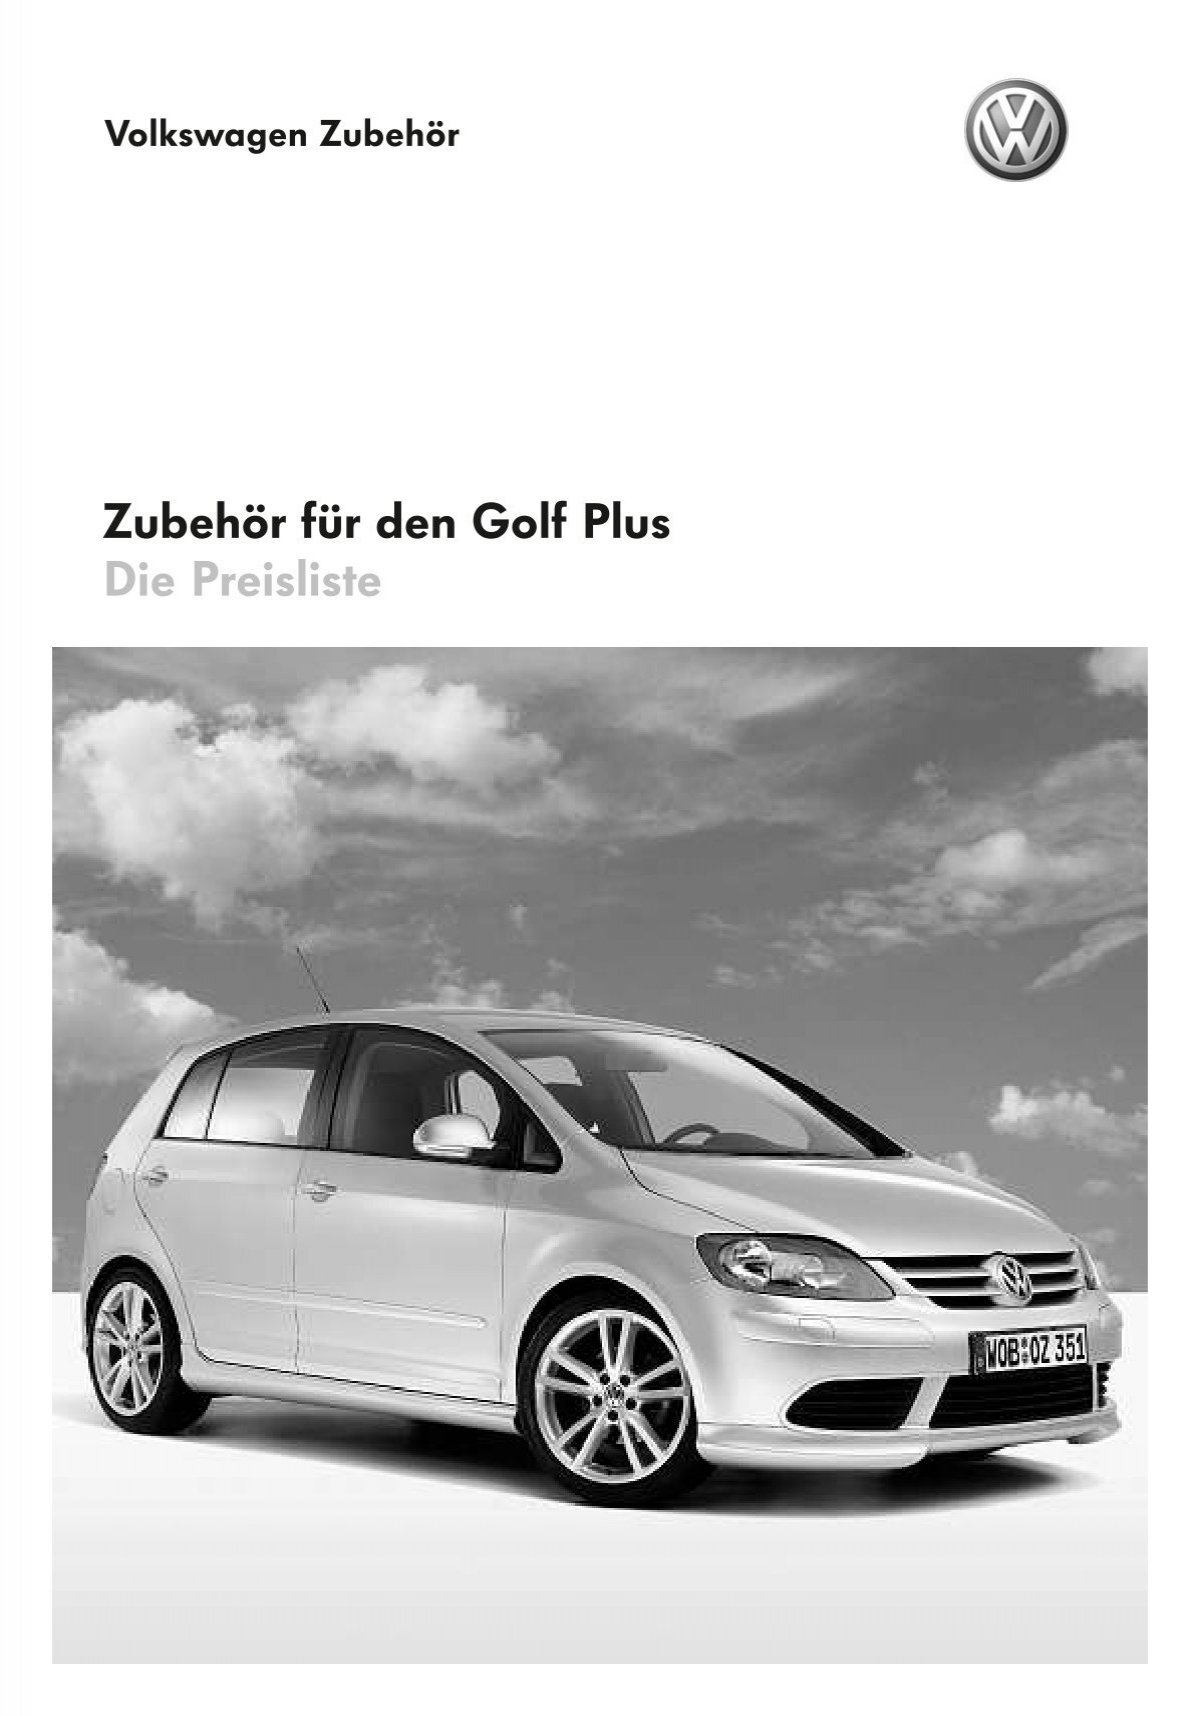 Zubehör für den Golf Plus Die Preisliste - Volkswagen Zubehör